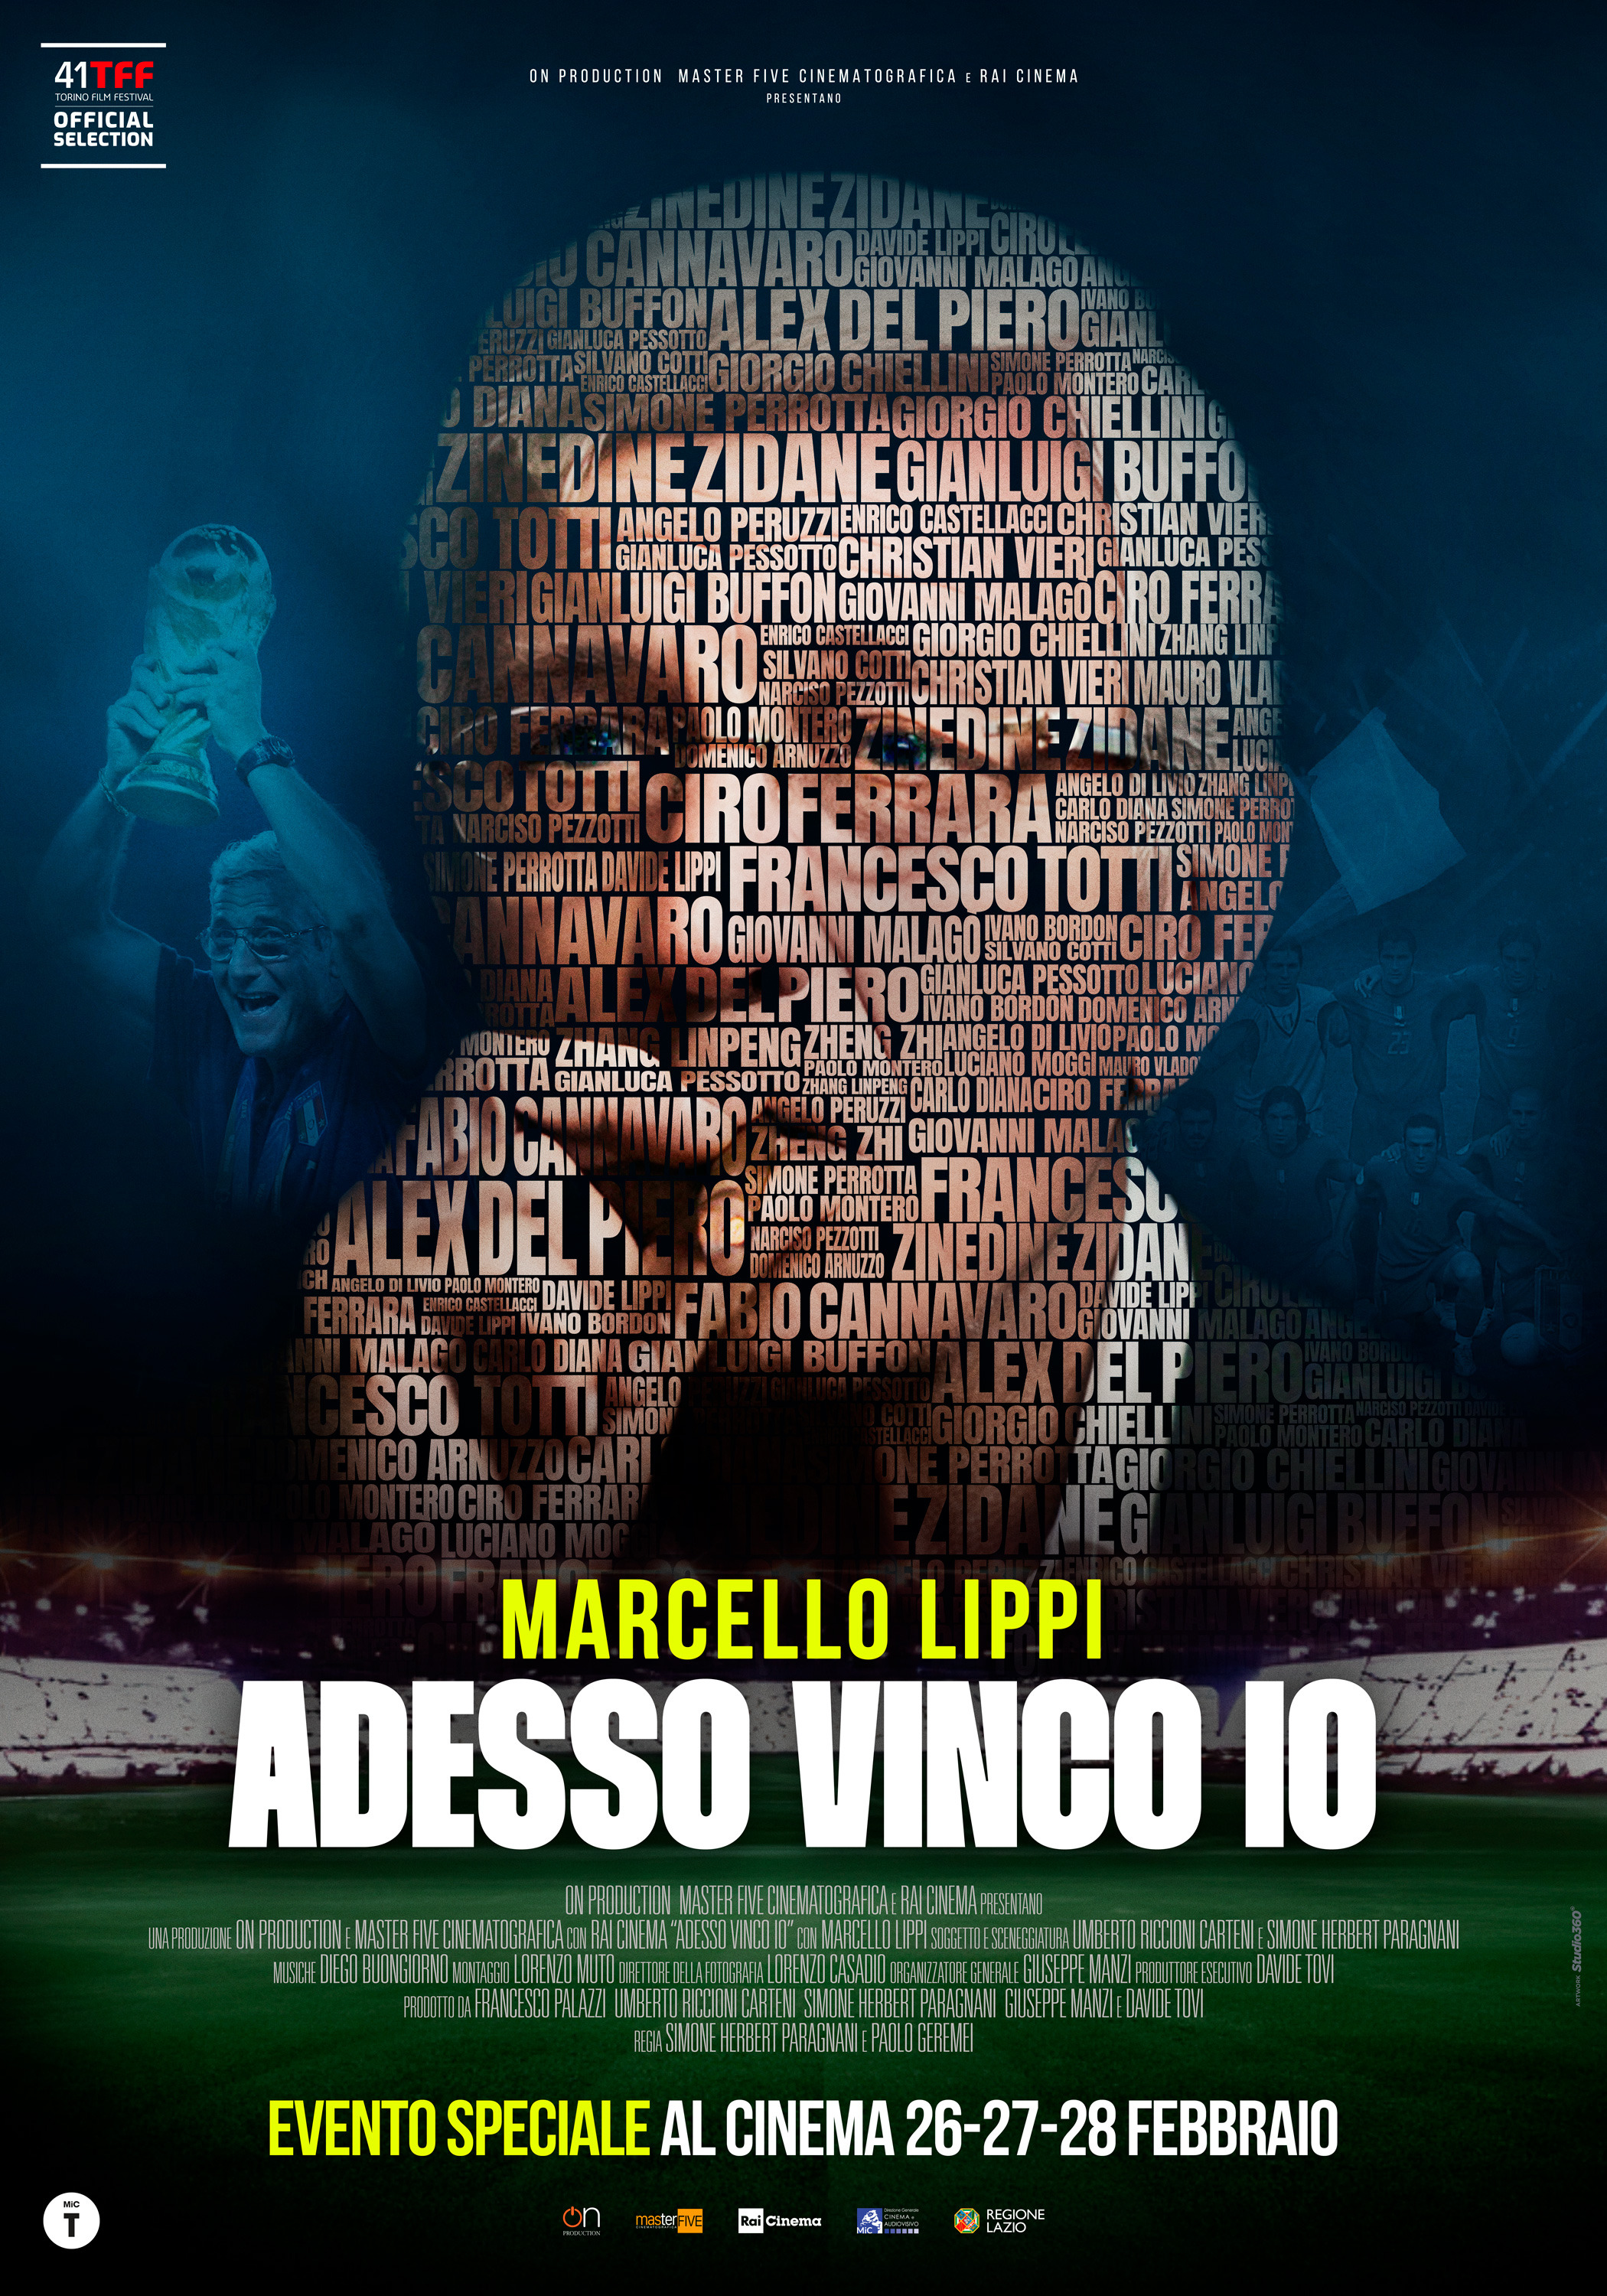 Mega Sized Movie Poster Image for Adesso Vinco Io 